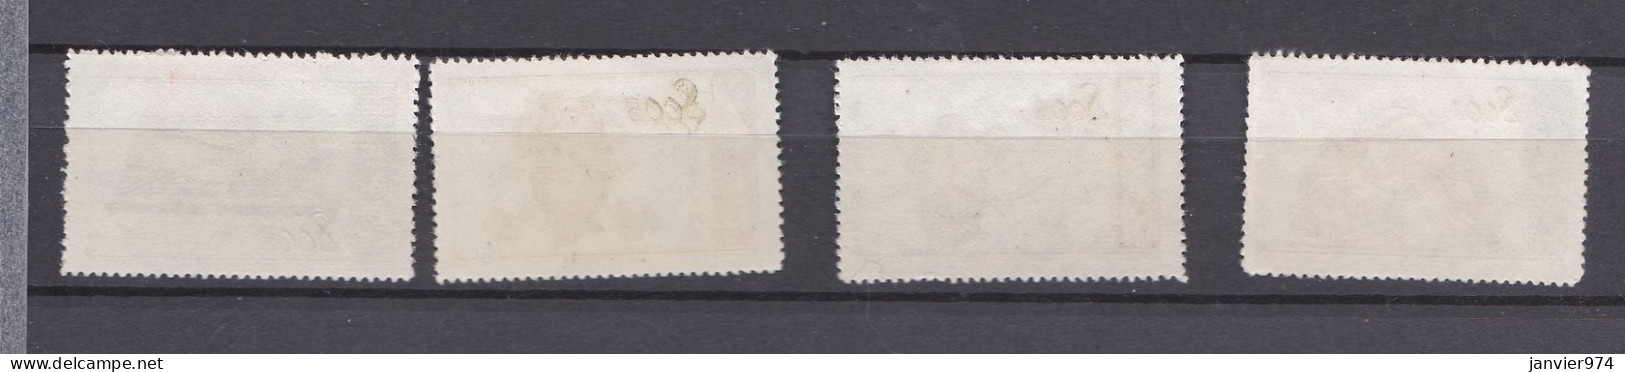 Chine 1953, La Serie Complete , Instruments De Mesure Anciens, 4 Timbres Neufs , 223 à 225 - Unused Stamps